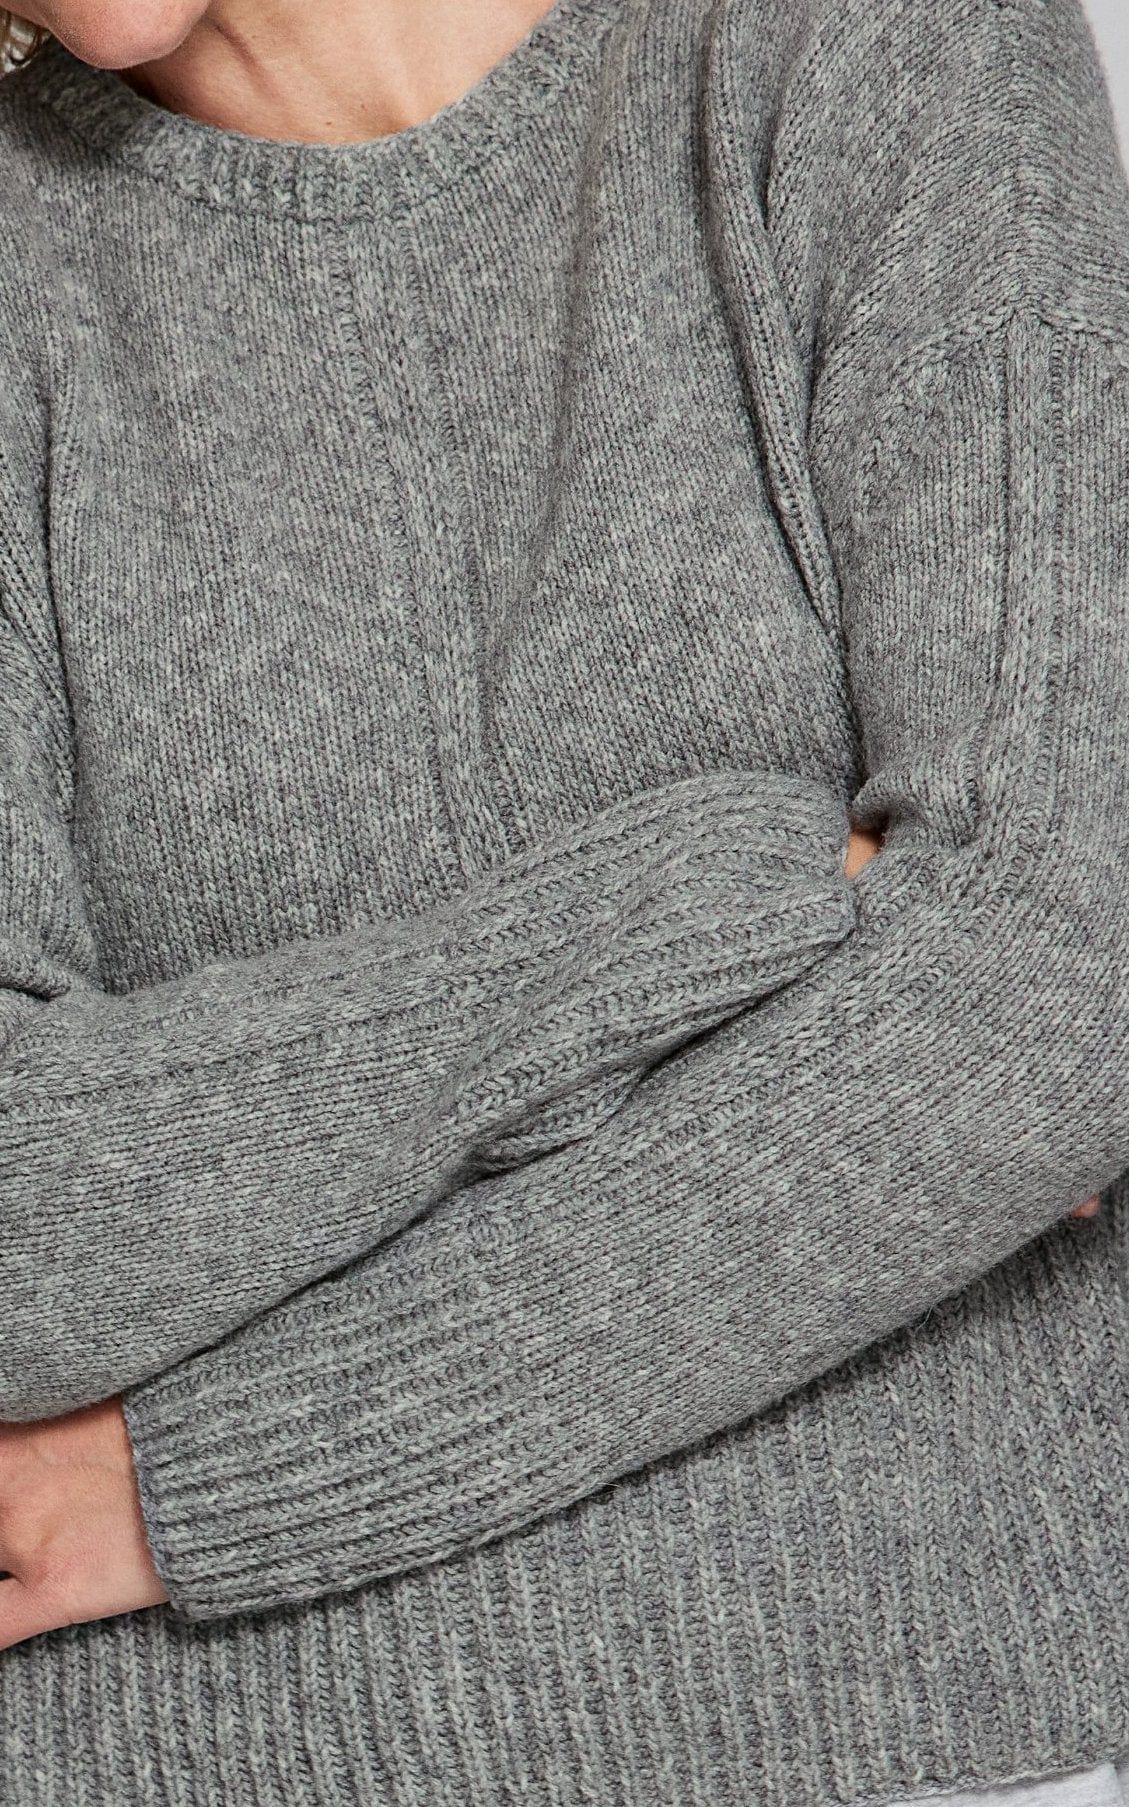 Pullover - CASHMERE 16 FINE - Strickset von LANA GROSSA jetzt online kaufen bei OONIQUE